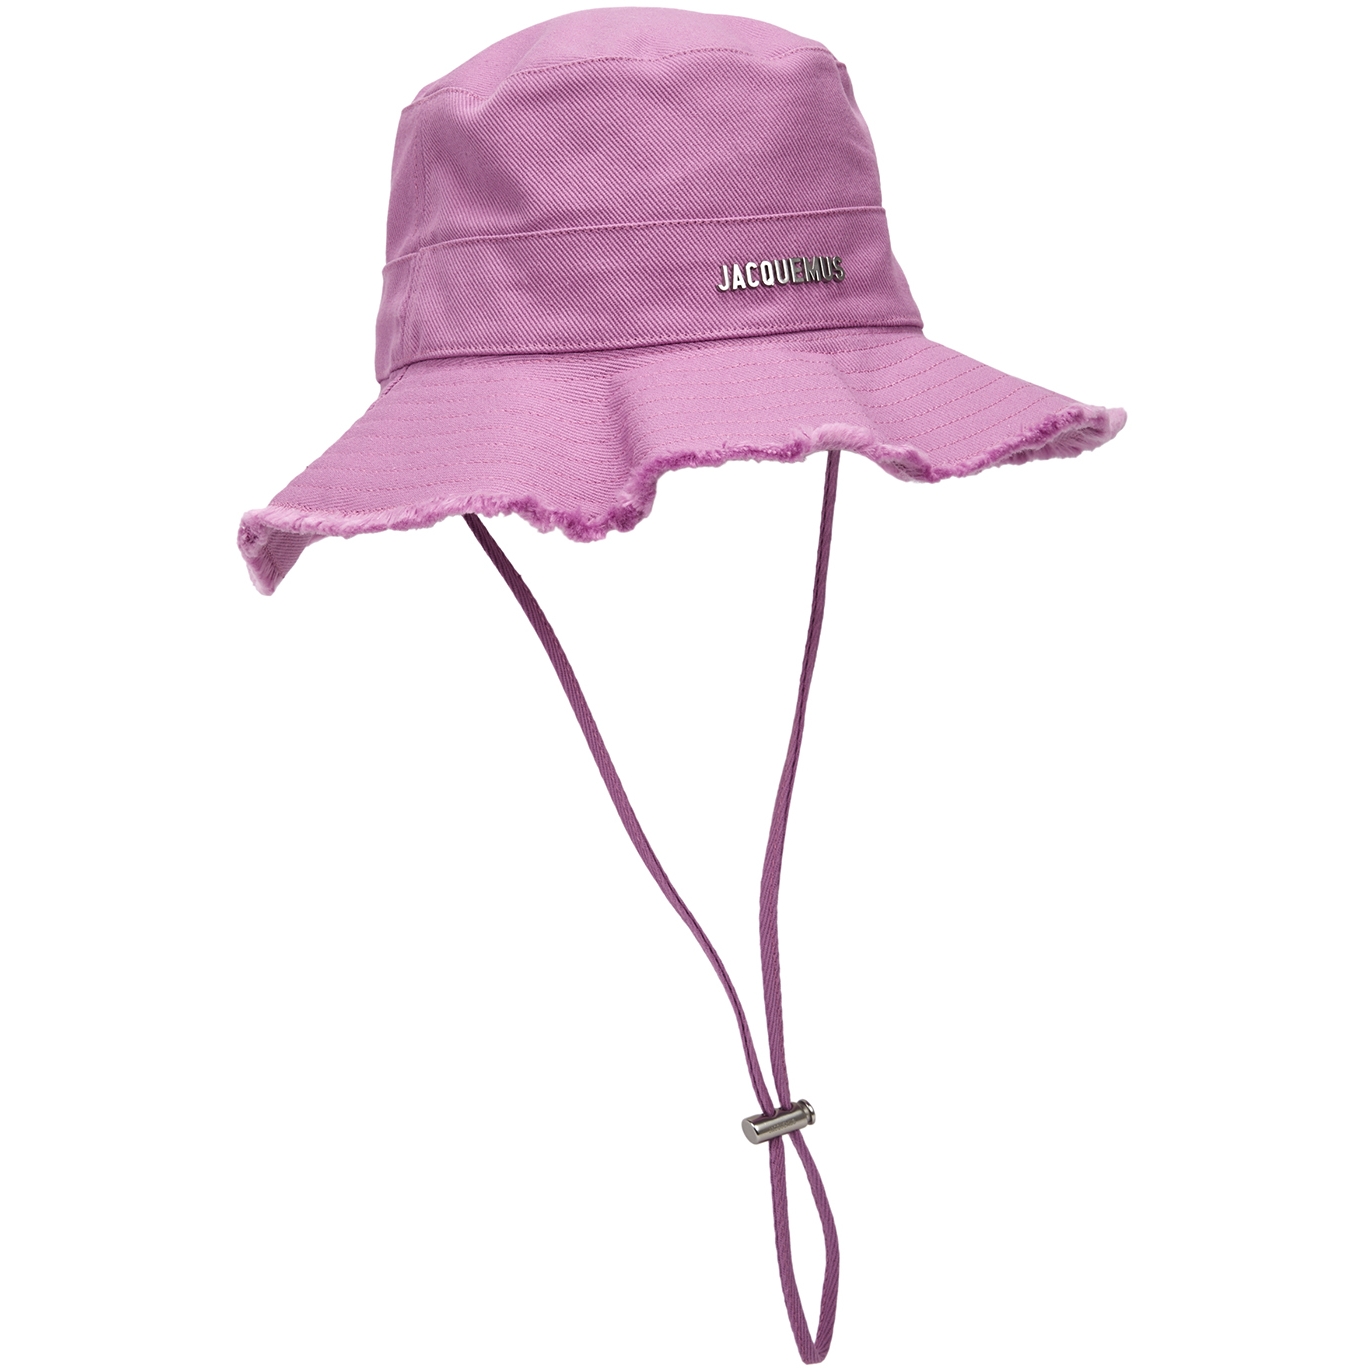 Jacquemus Le Bob Artichaut Canvas Bucket Hat - Lilac